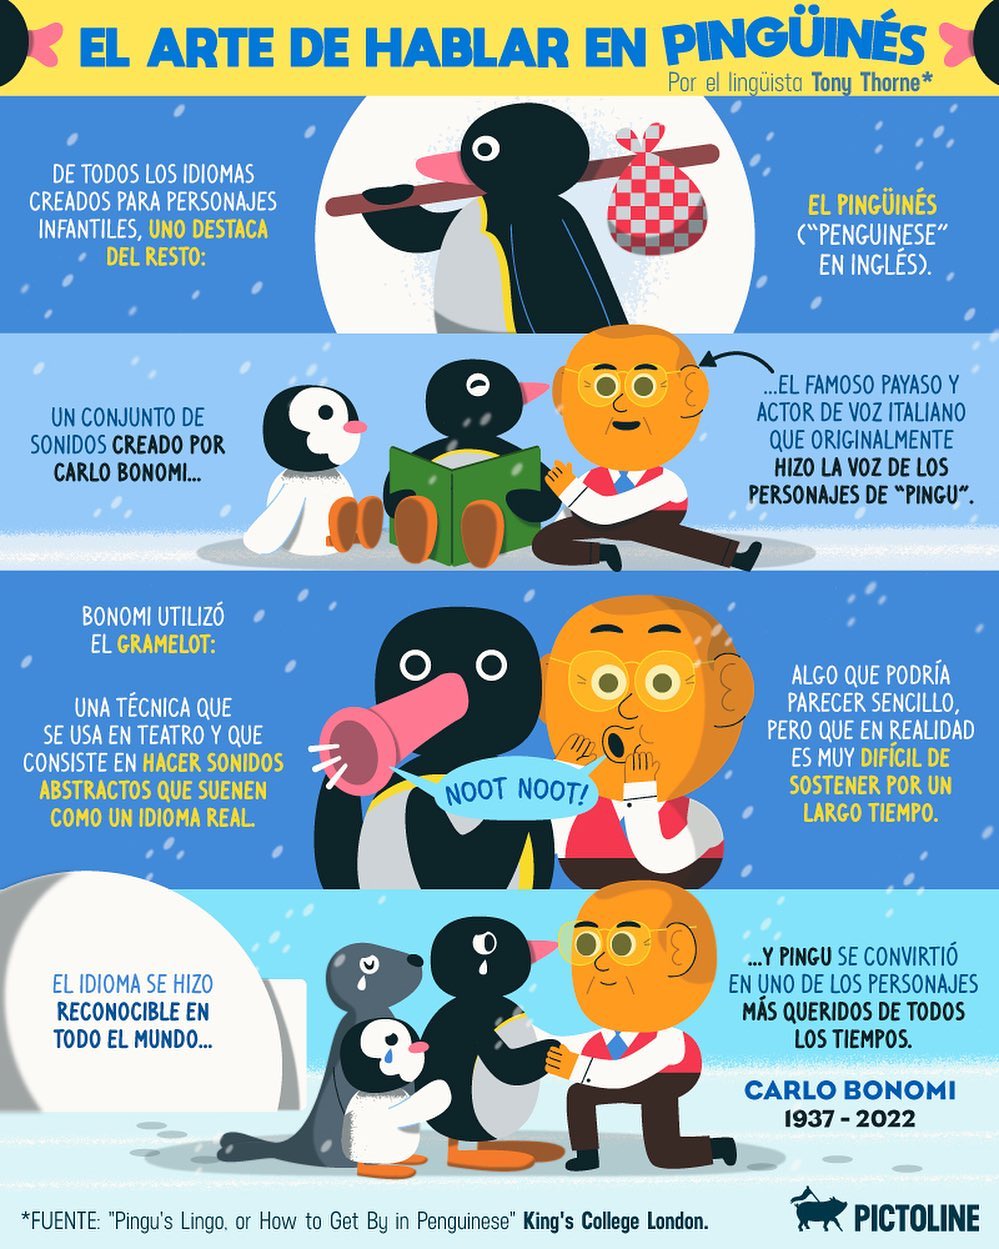 Noot noot! 📣🐧 Hace unos días falleció Carlo Bonomi: el creador del "idioma" de Pingu, uno de los más reconocibles de todas las series animadas ❤️ #pingu #idioma #carlobonomi #nootnoot #penguins #caricatura #serie #rip